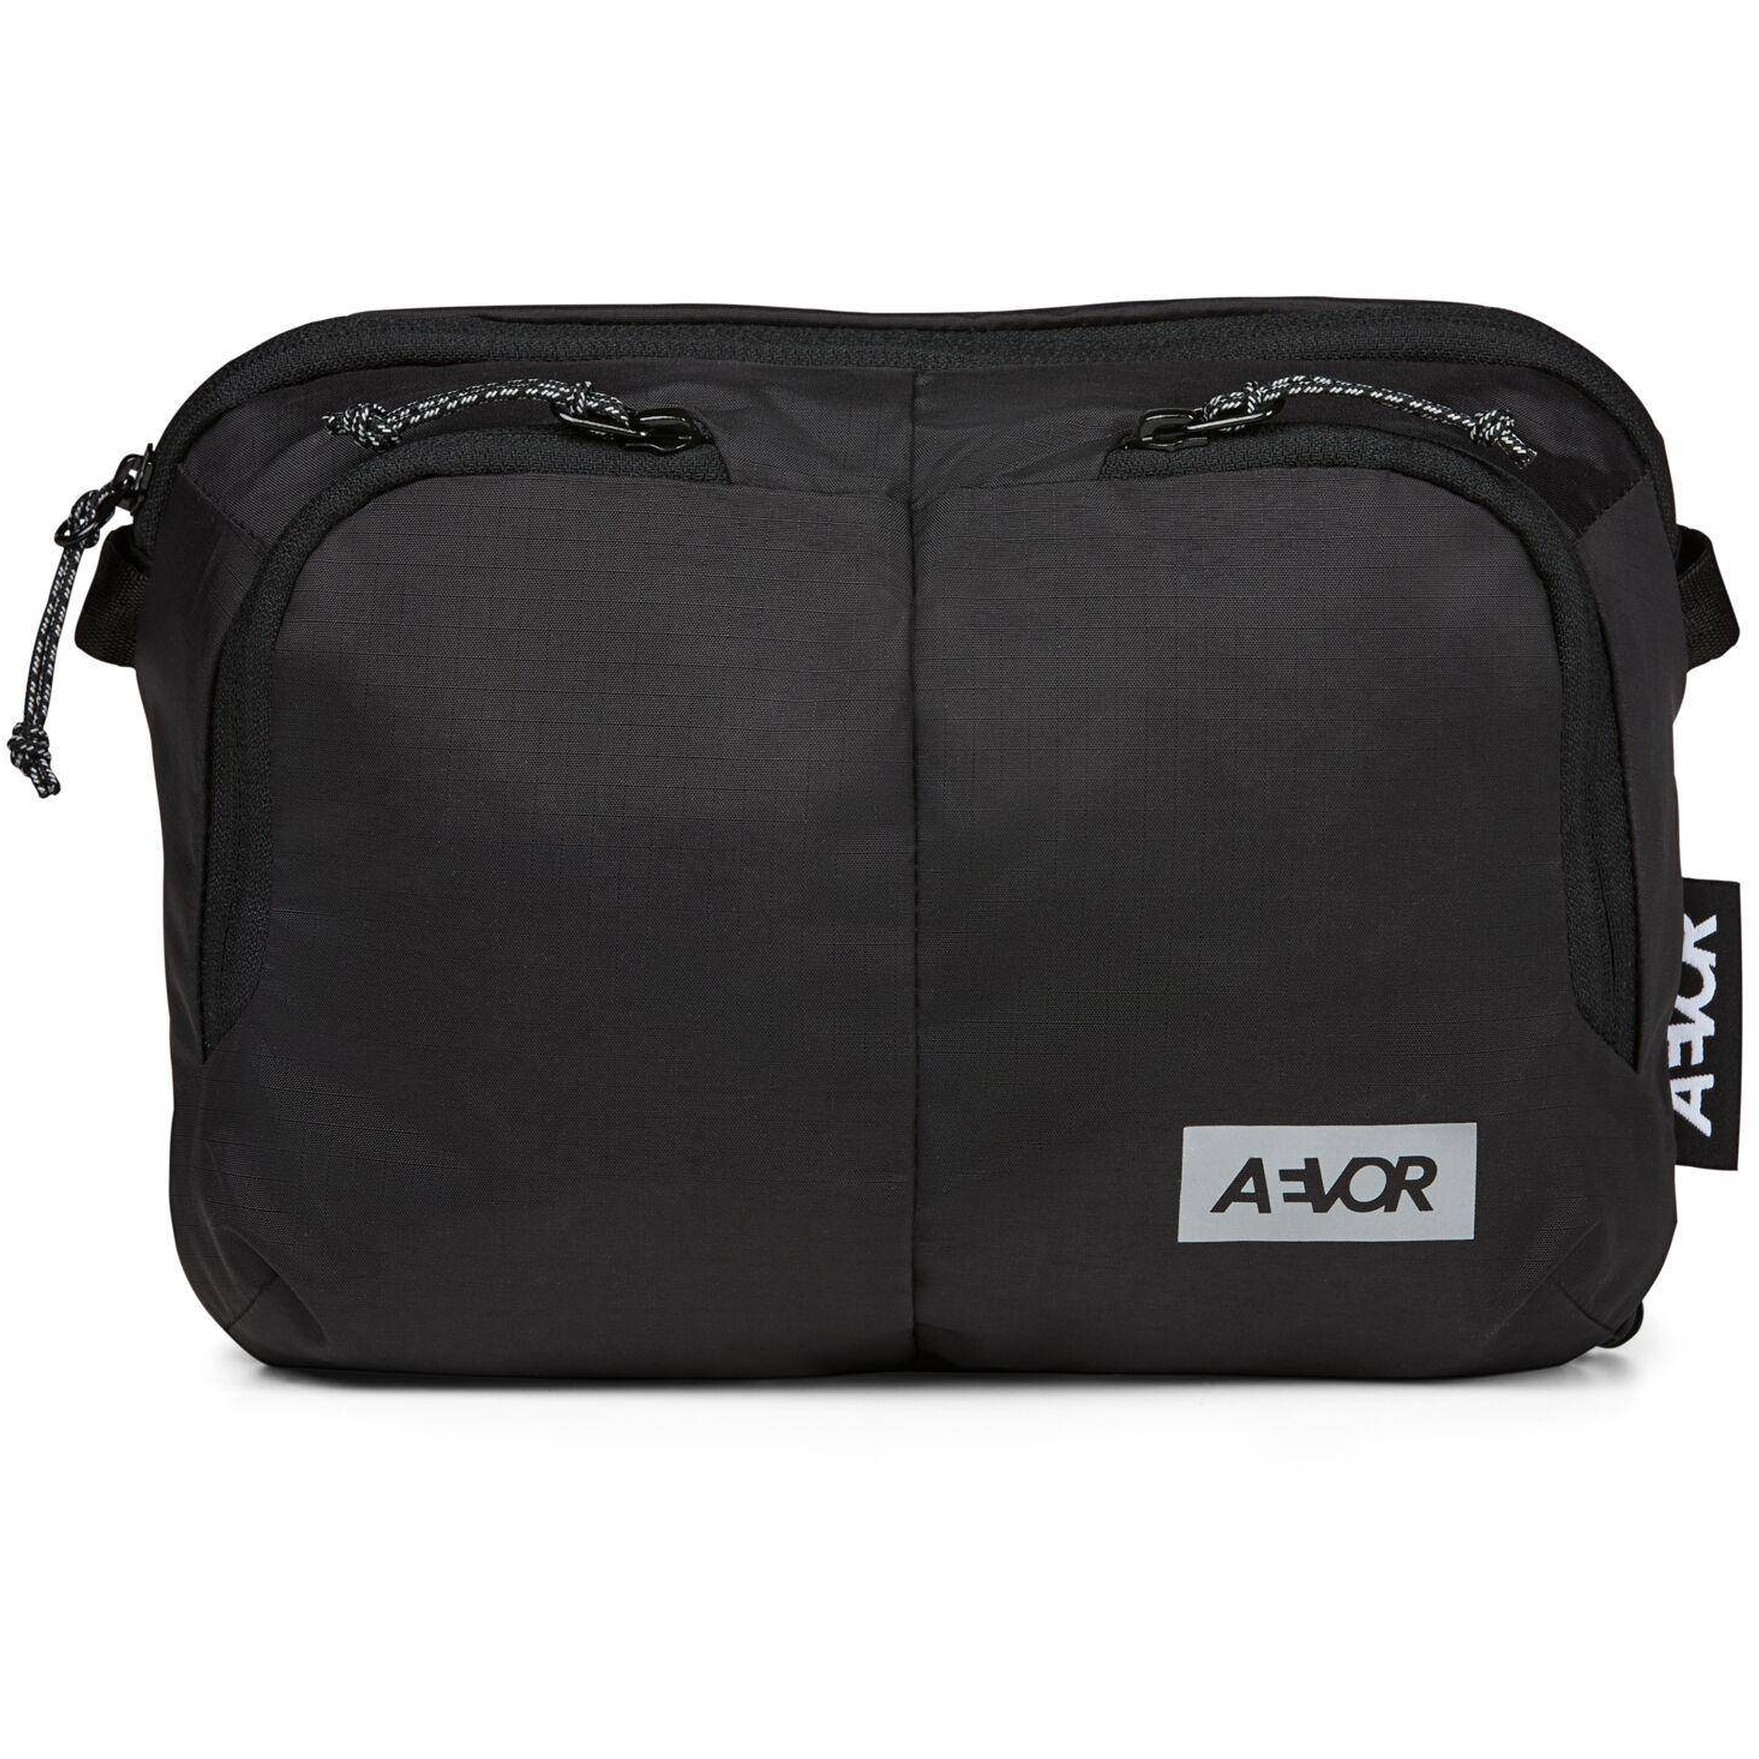 Produktbild von AEVOR Sacoche Bag Umhängetasche - Ripstop Black